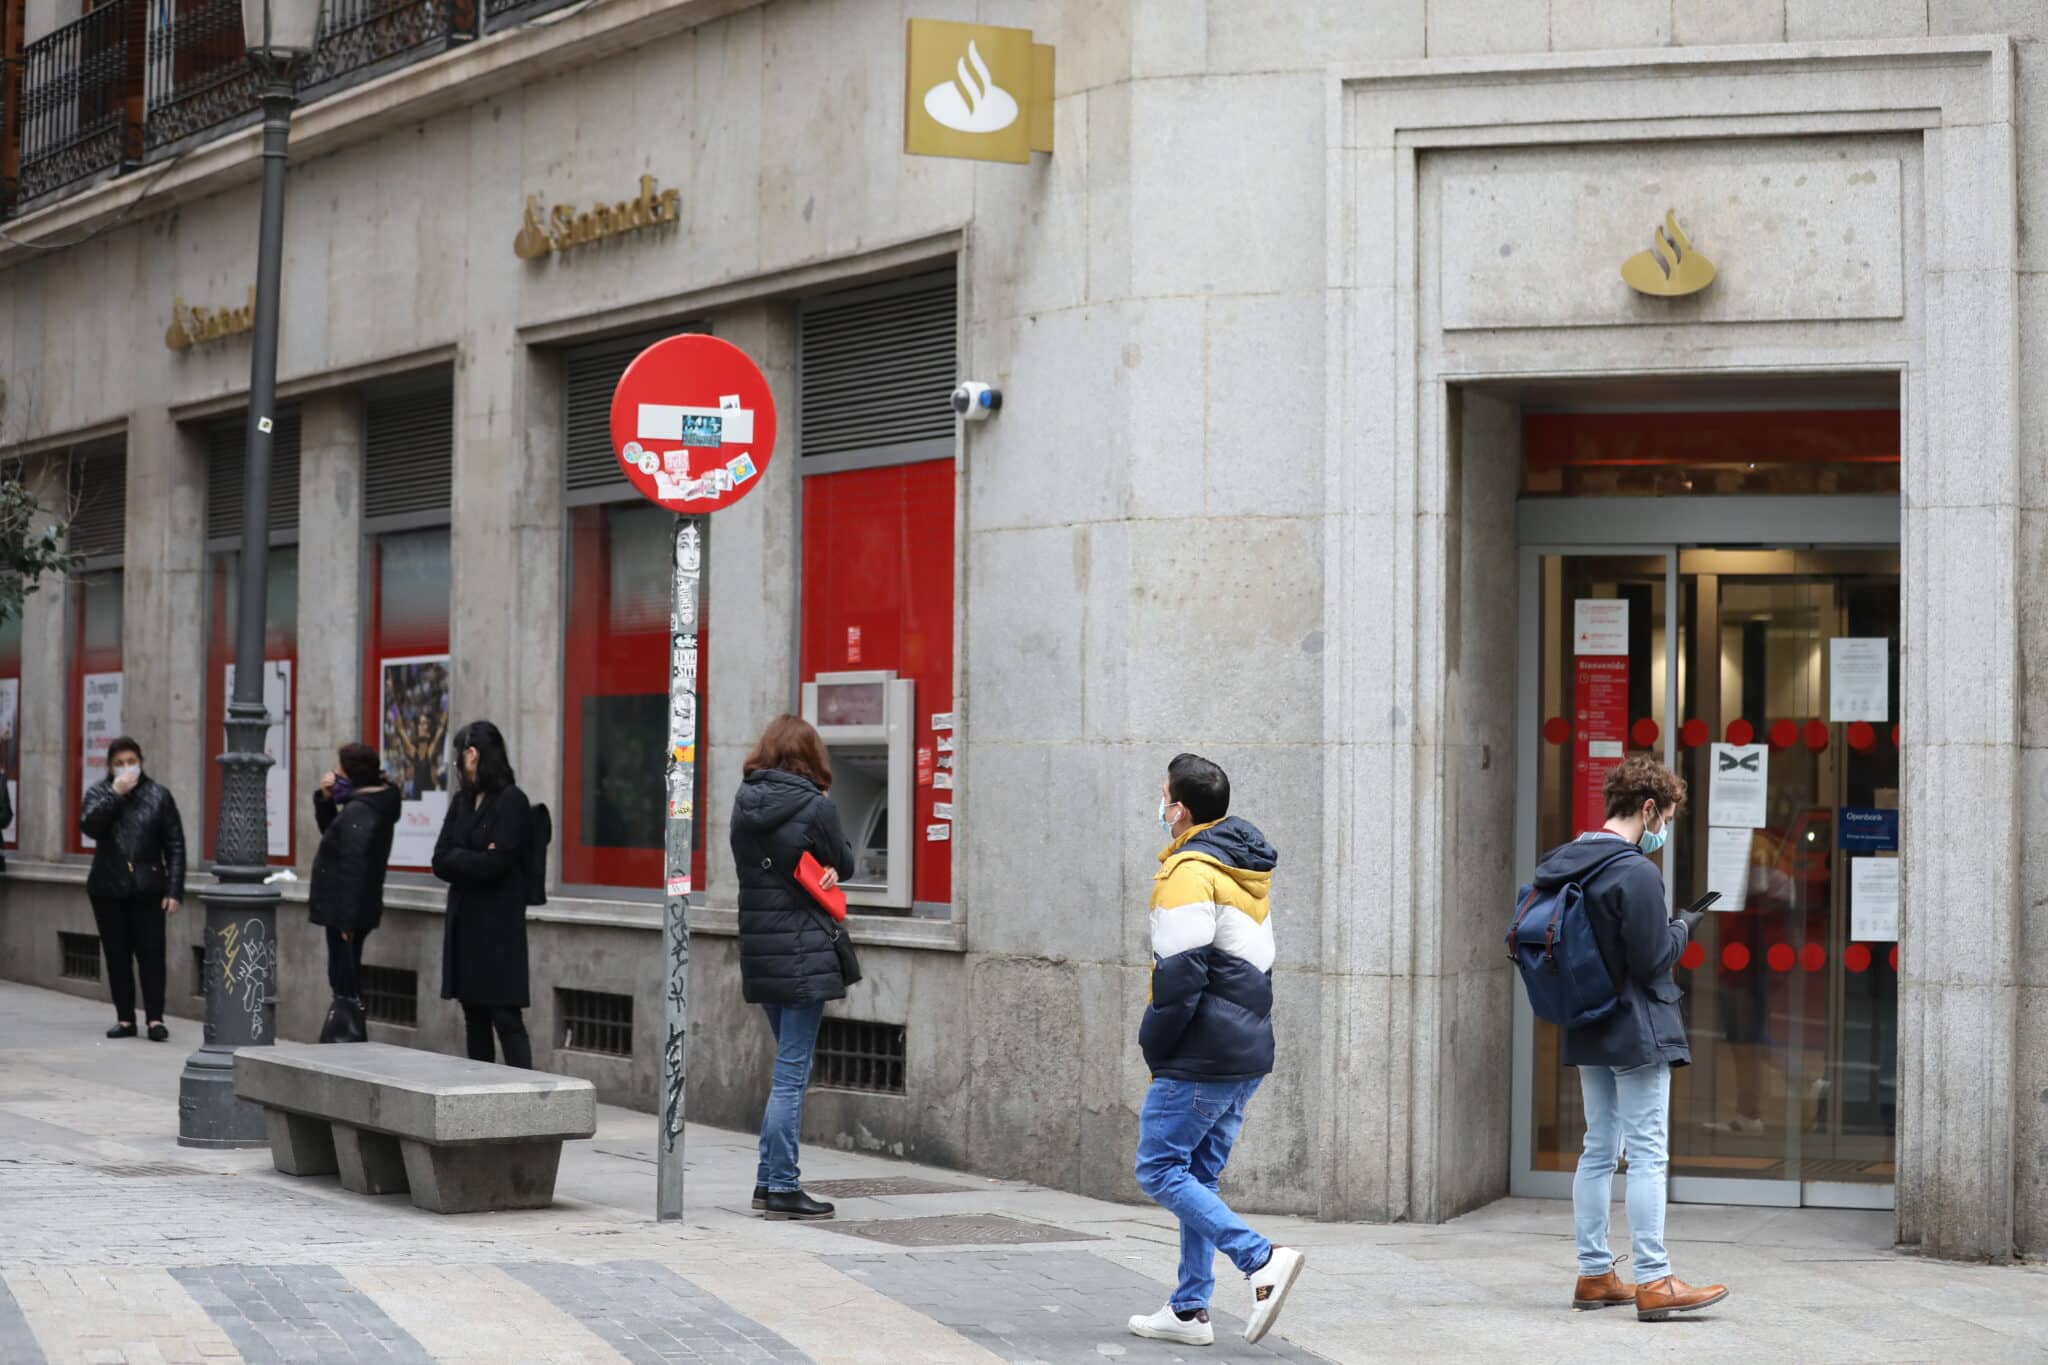 Banco Santander completa su ERE con la salida de 3.572 empleados